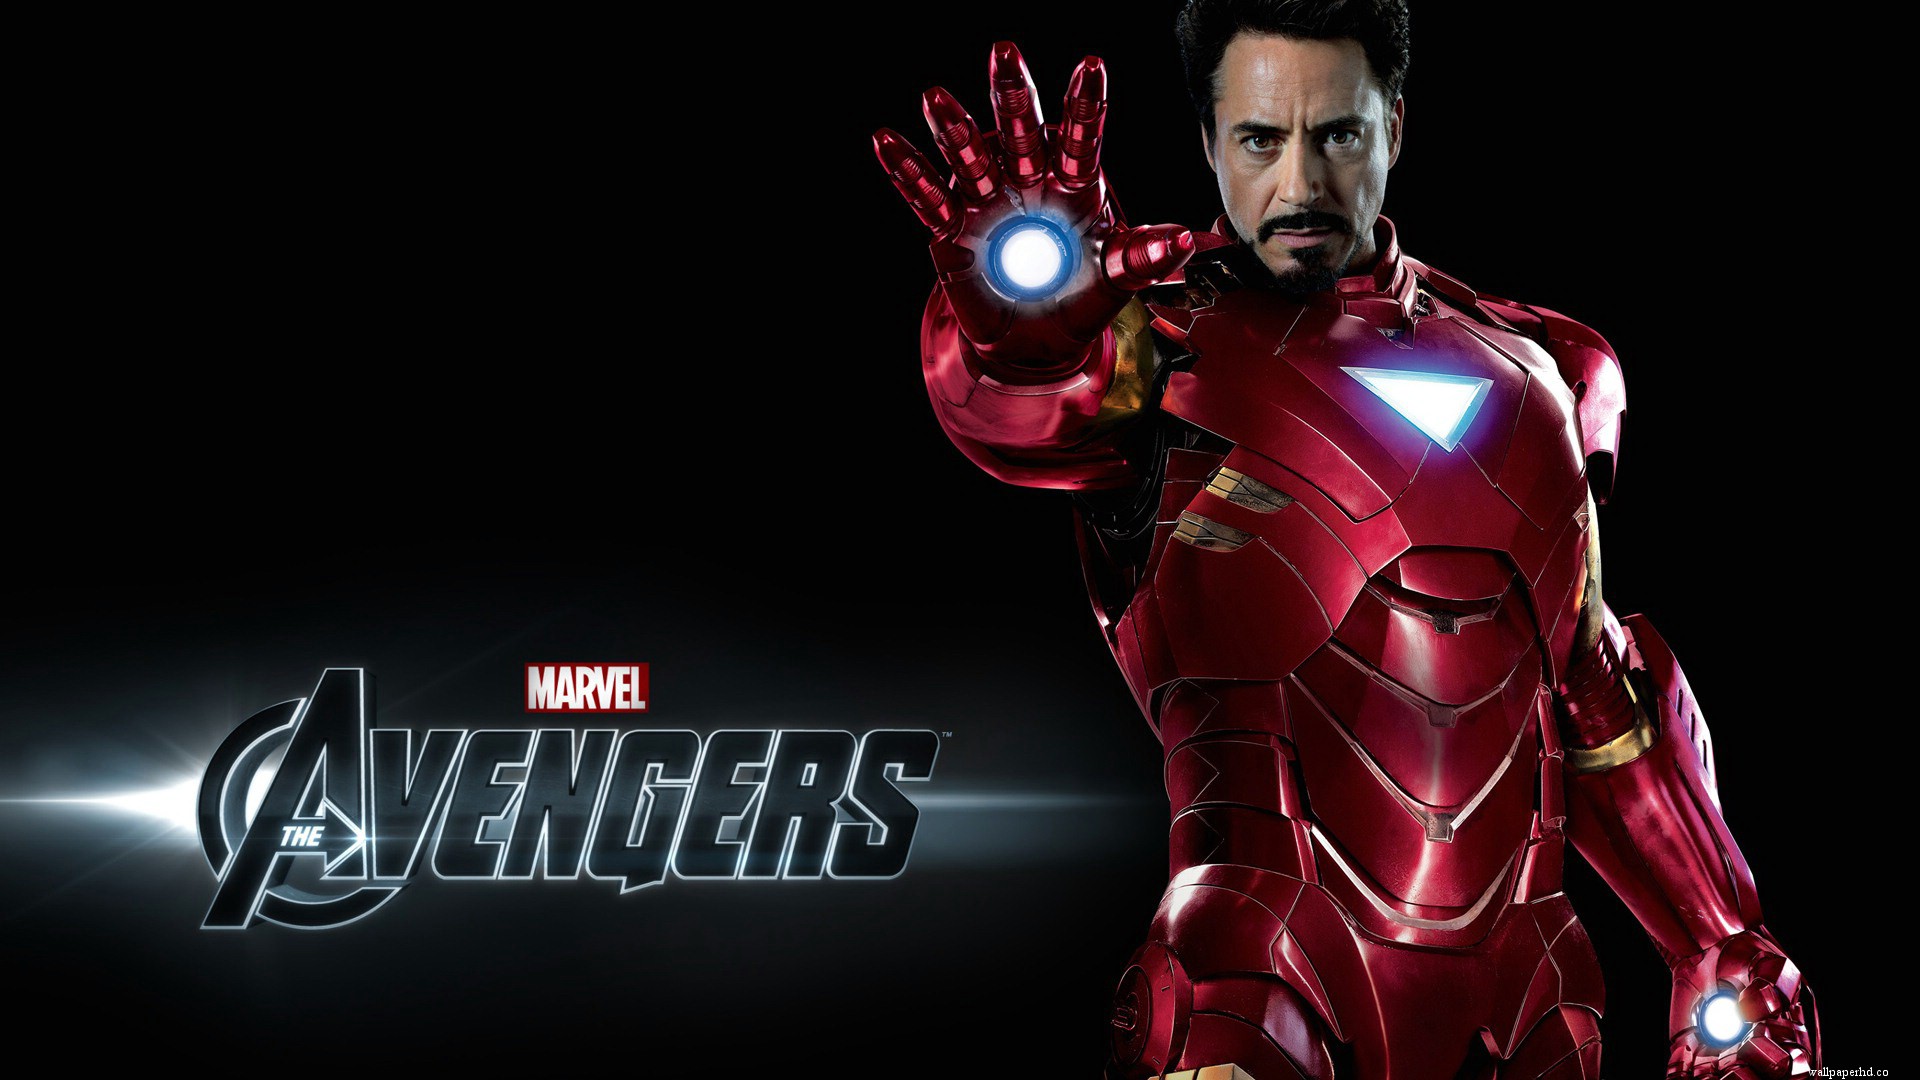 [42+] Avengers HD Wallpapers 1080p | WallpaperSafari